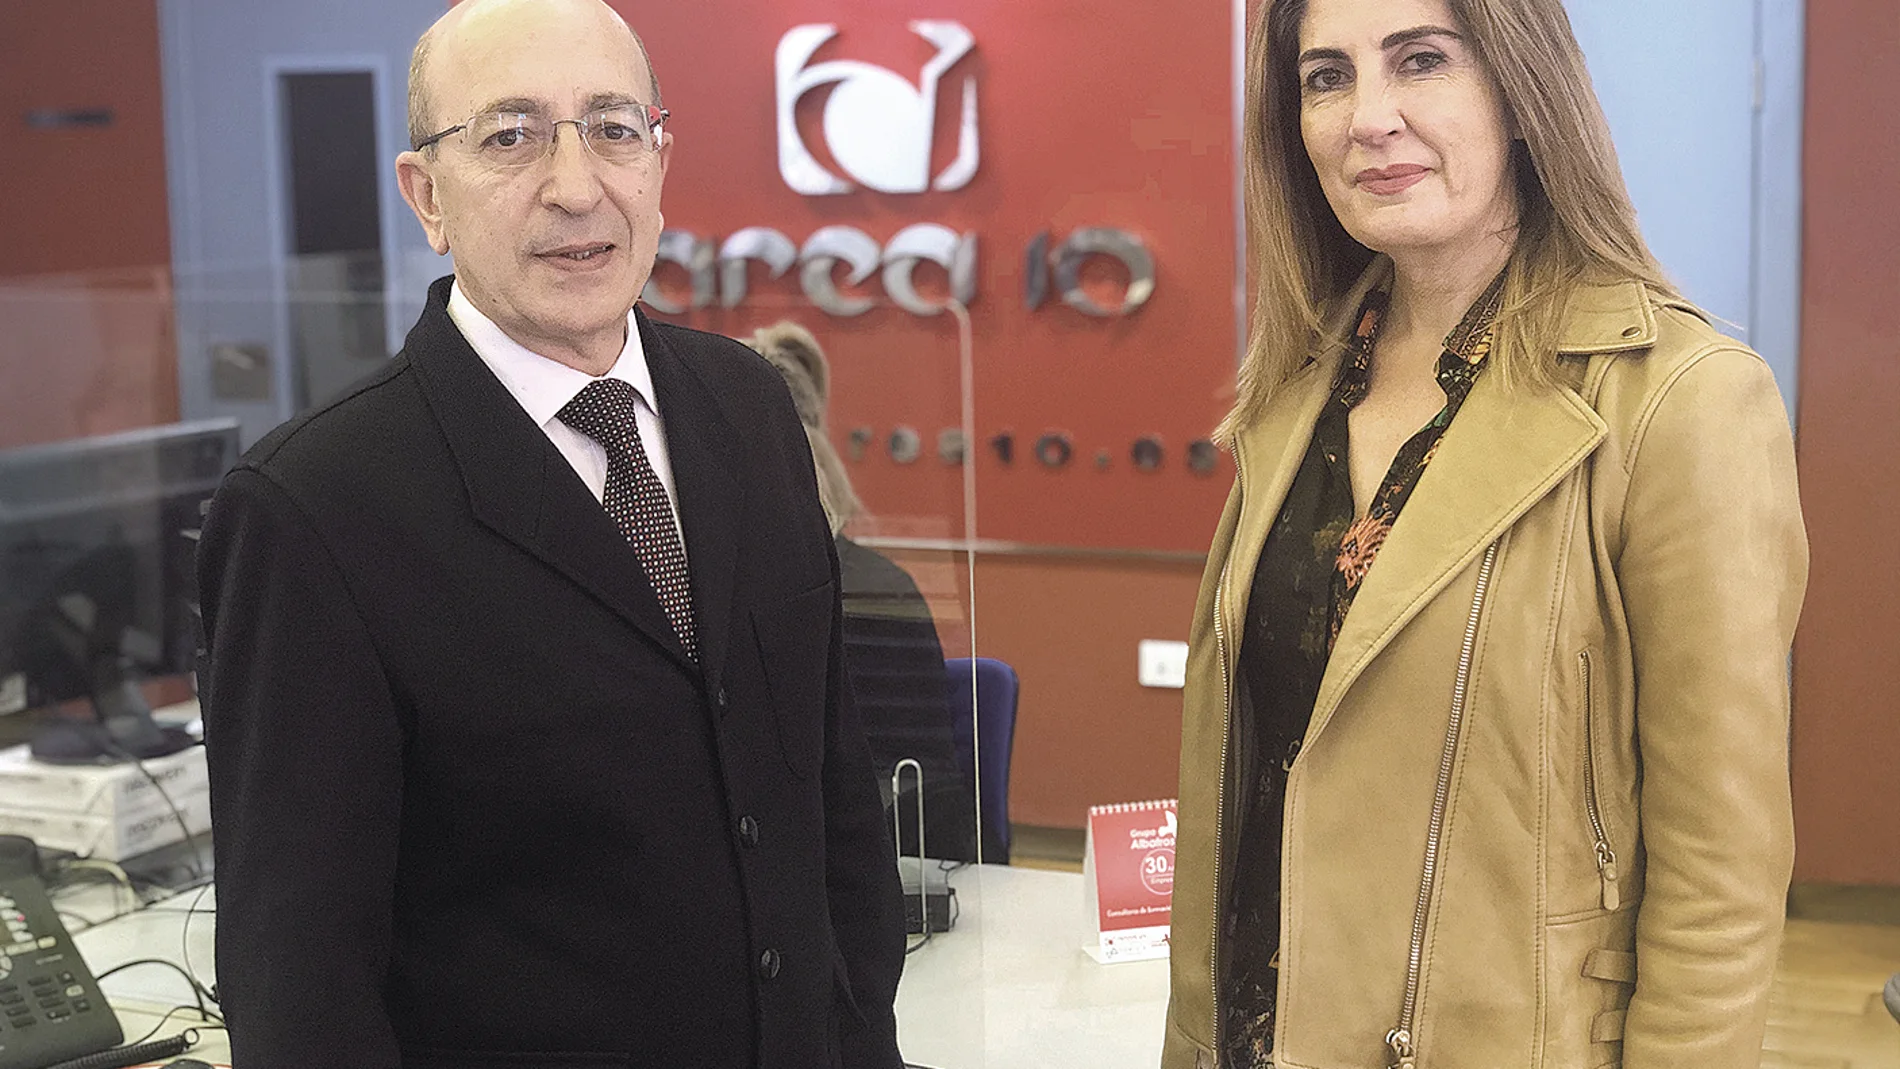 Celia Pajuelo Bravo, Product Manager, José María Rodríguez Carretero, Dirección Comercial, en Grupo Albatros -Área 10-.